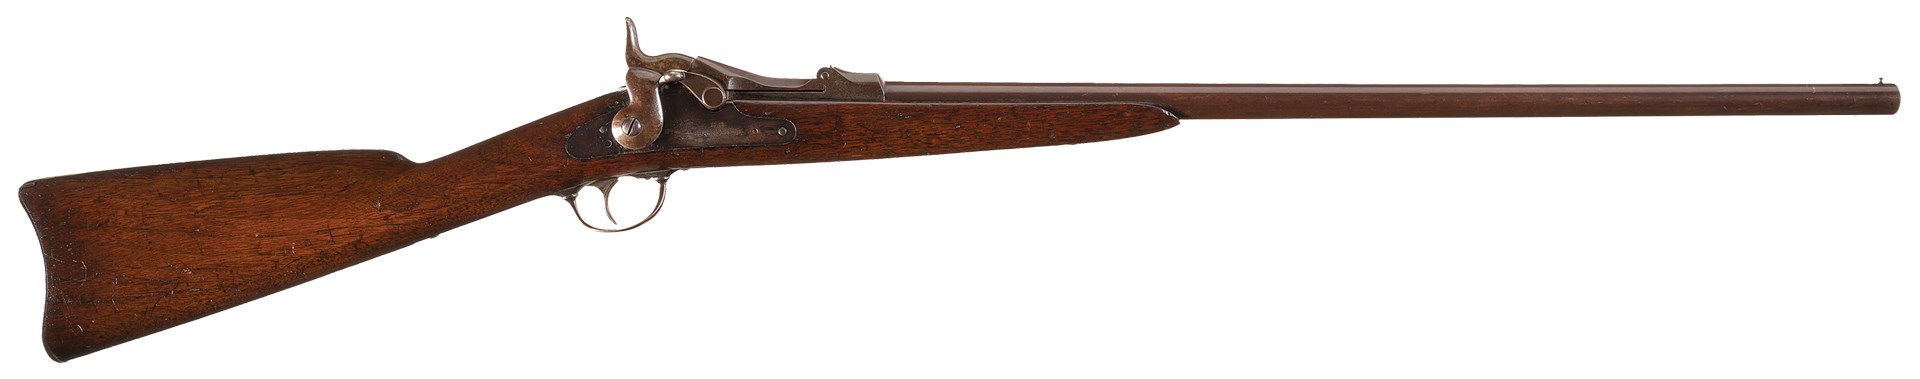 right side of model 1881 forager shotgun 20 gauge trapdoor